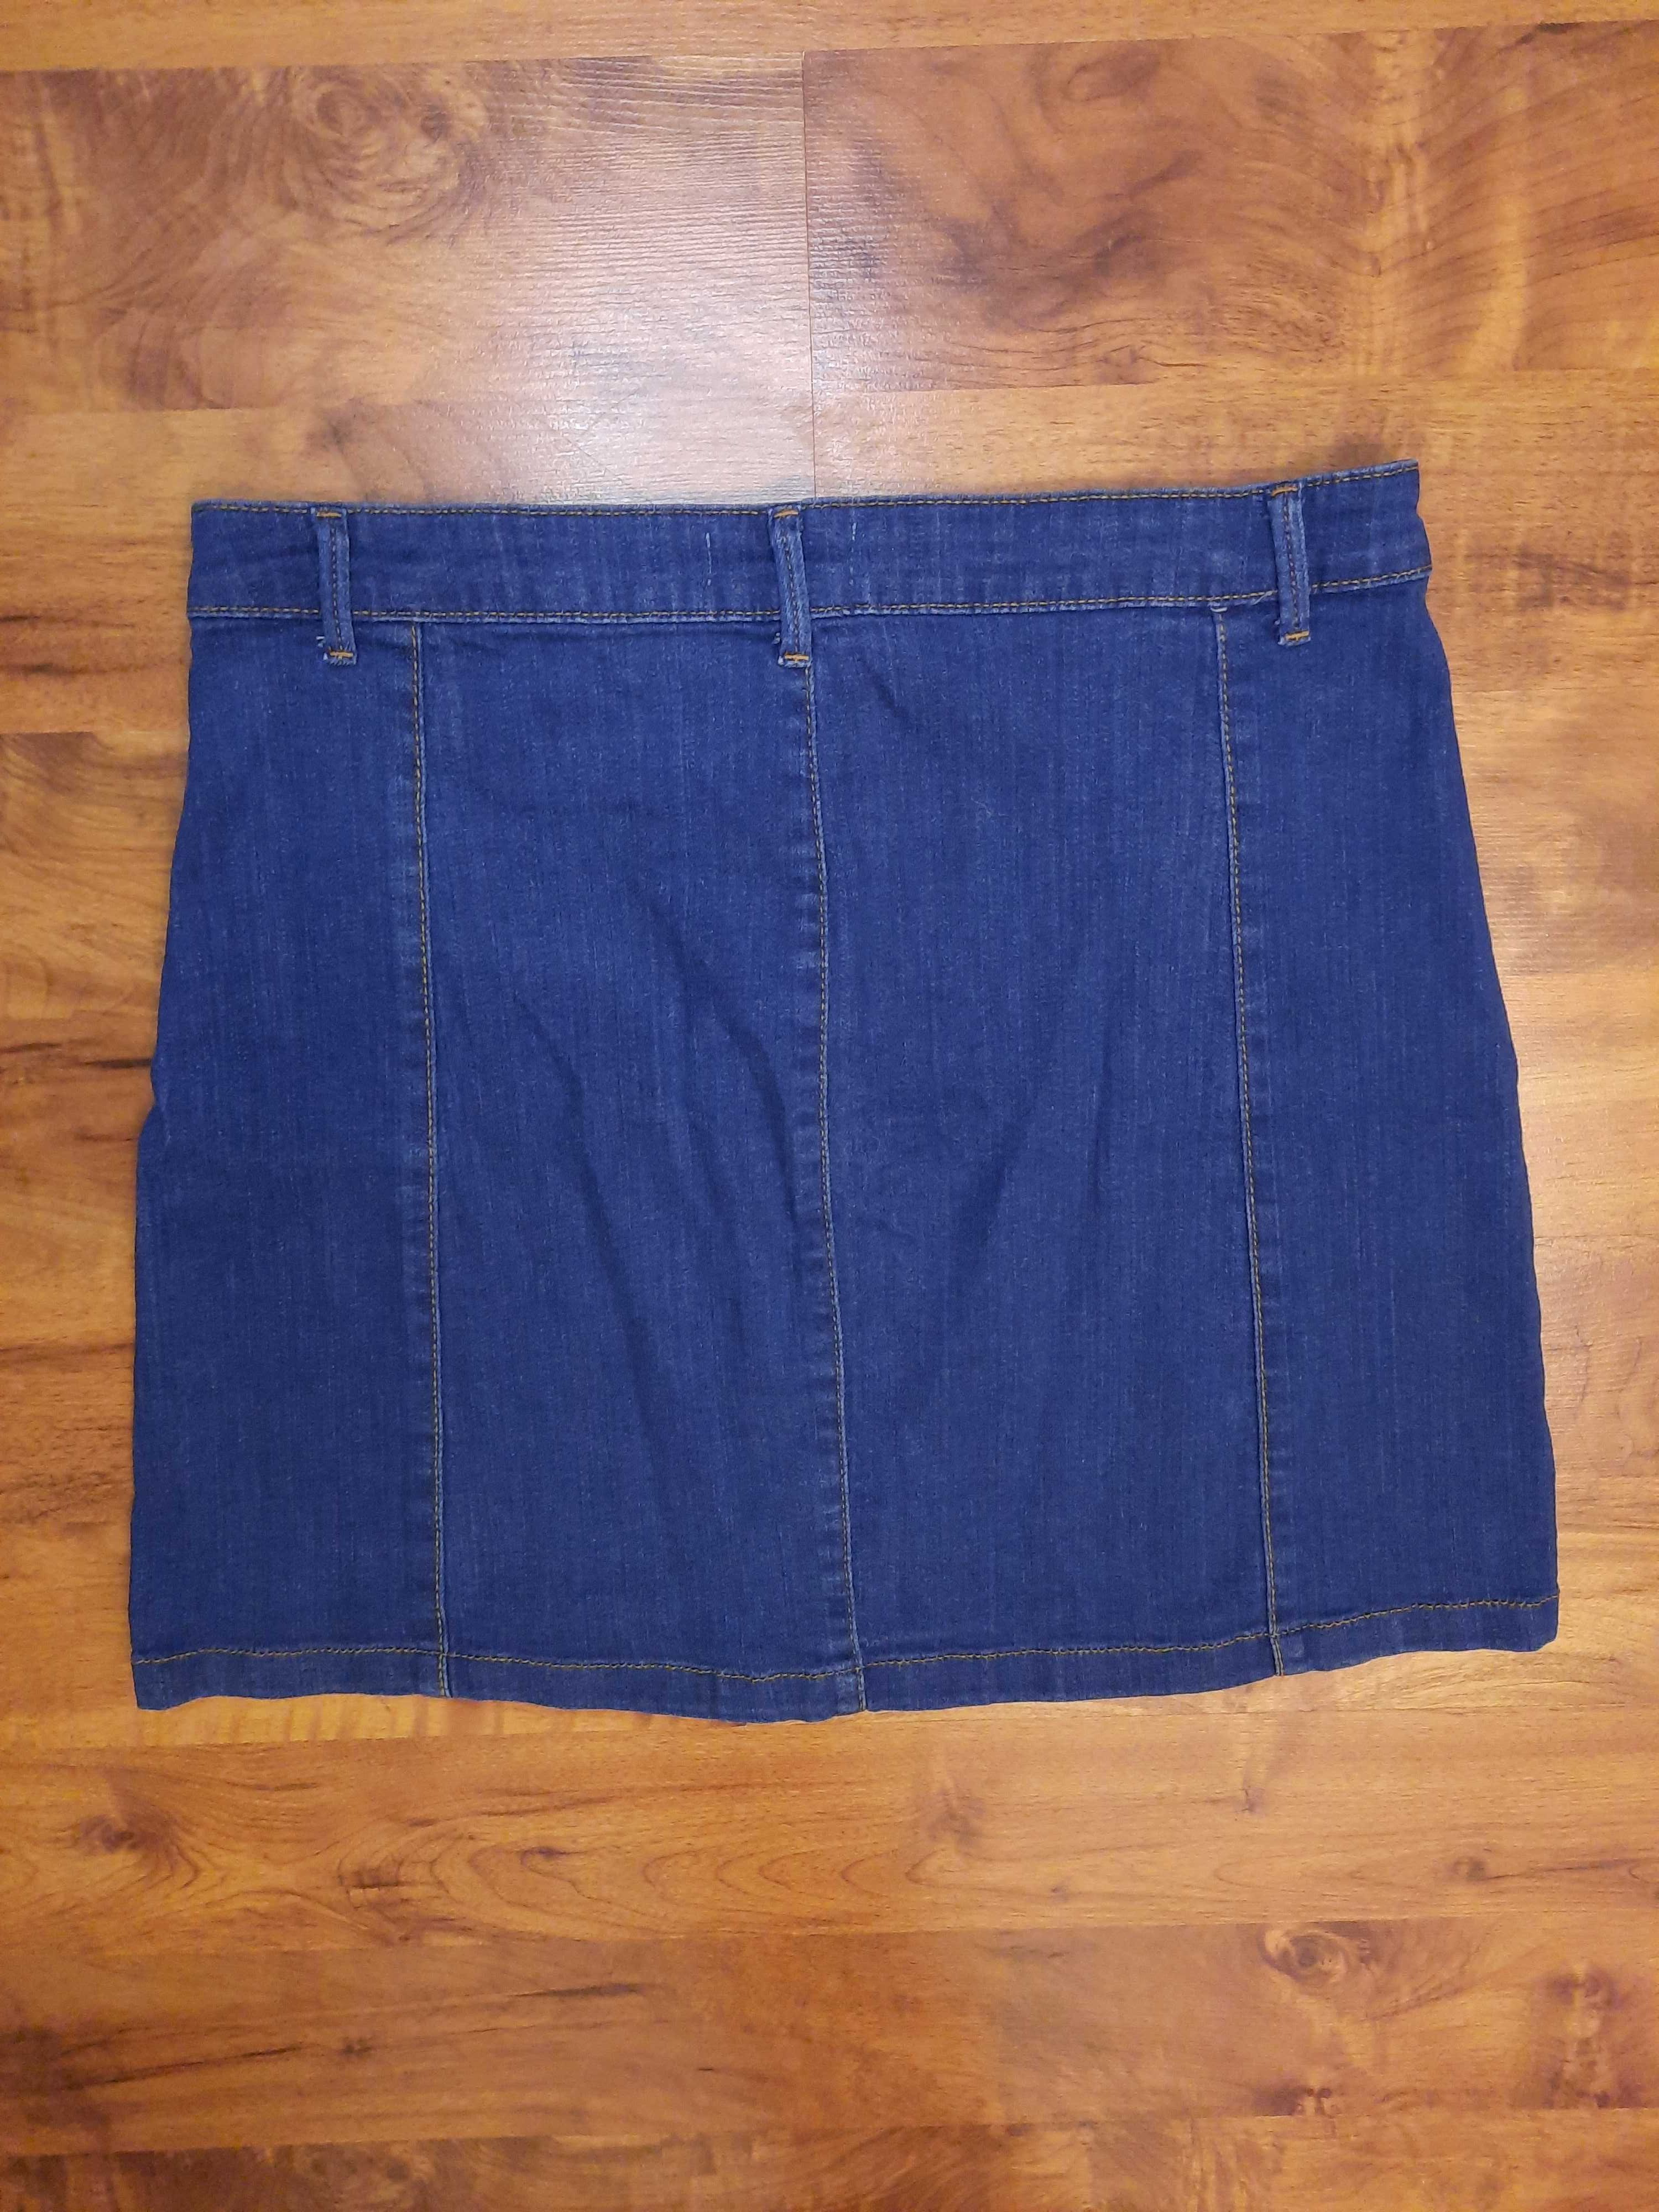 Spódnica jeansowa krótka jeansowa spódniczka Gina Tricot 42 XL